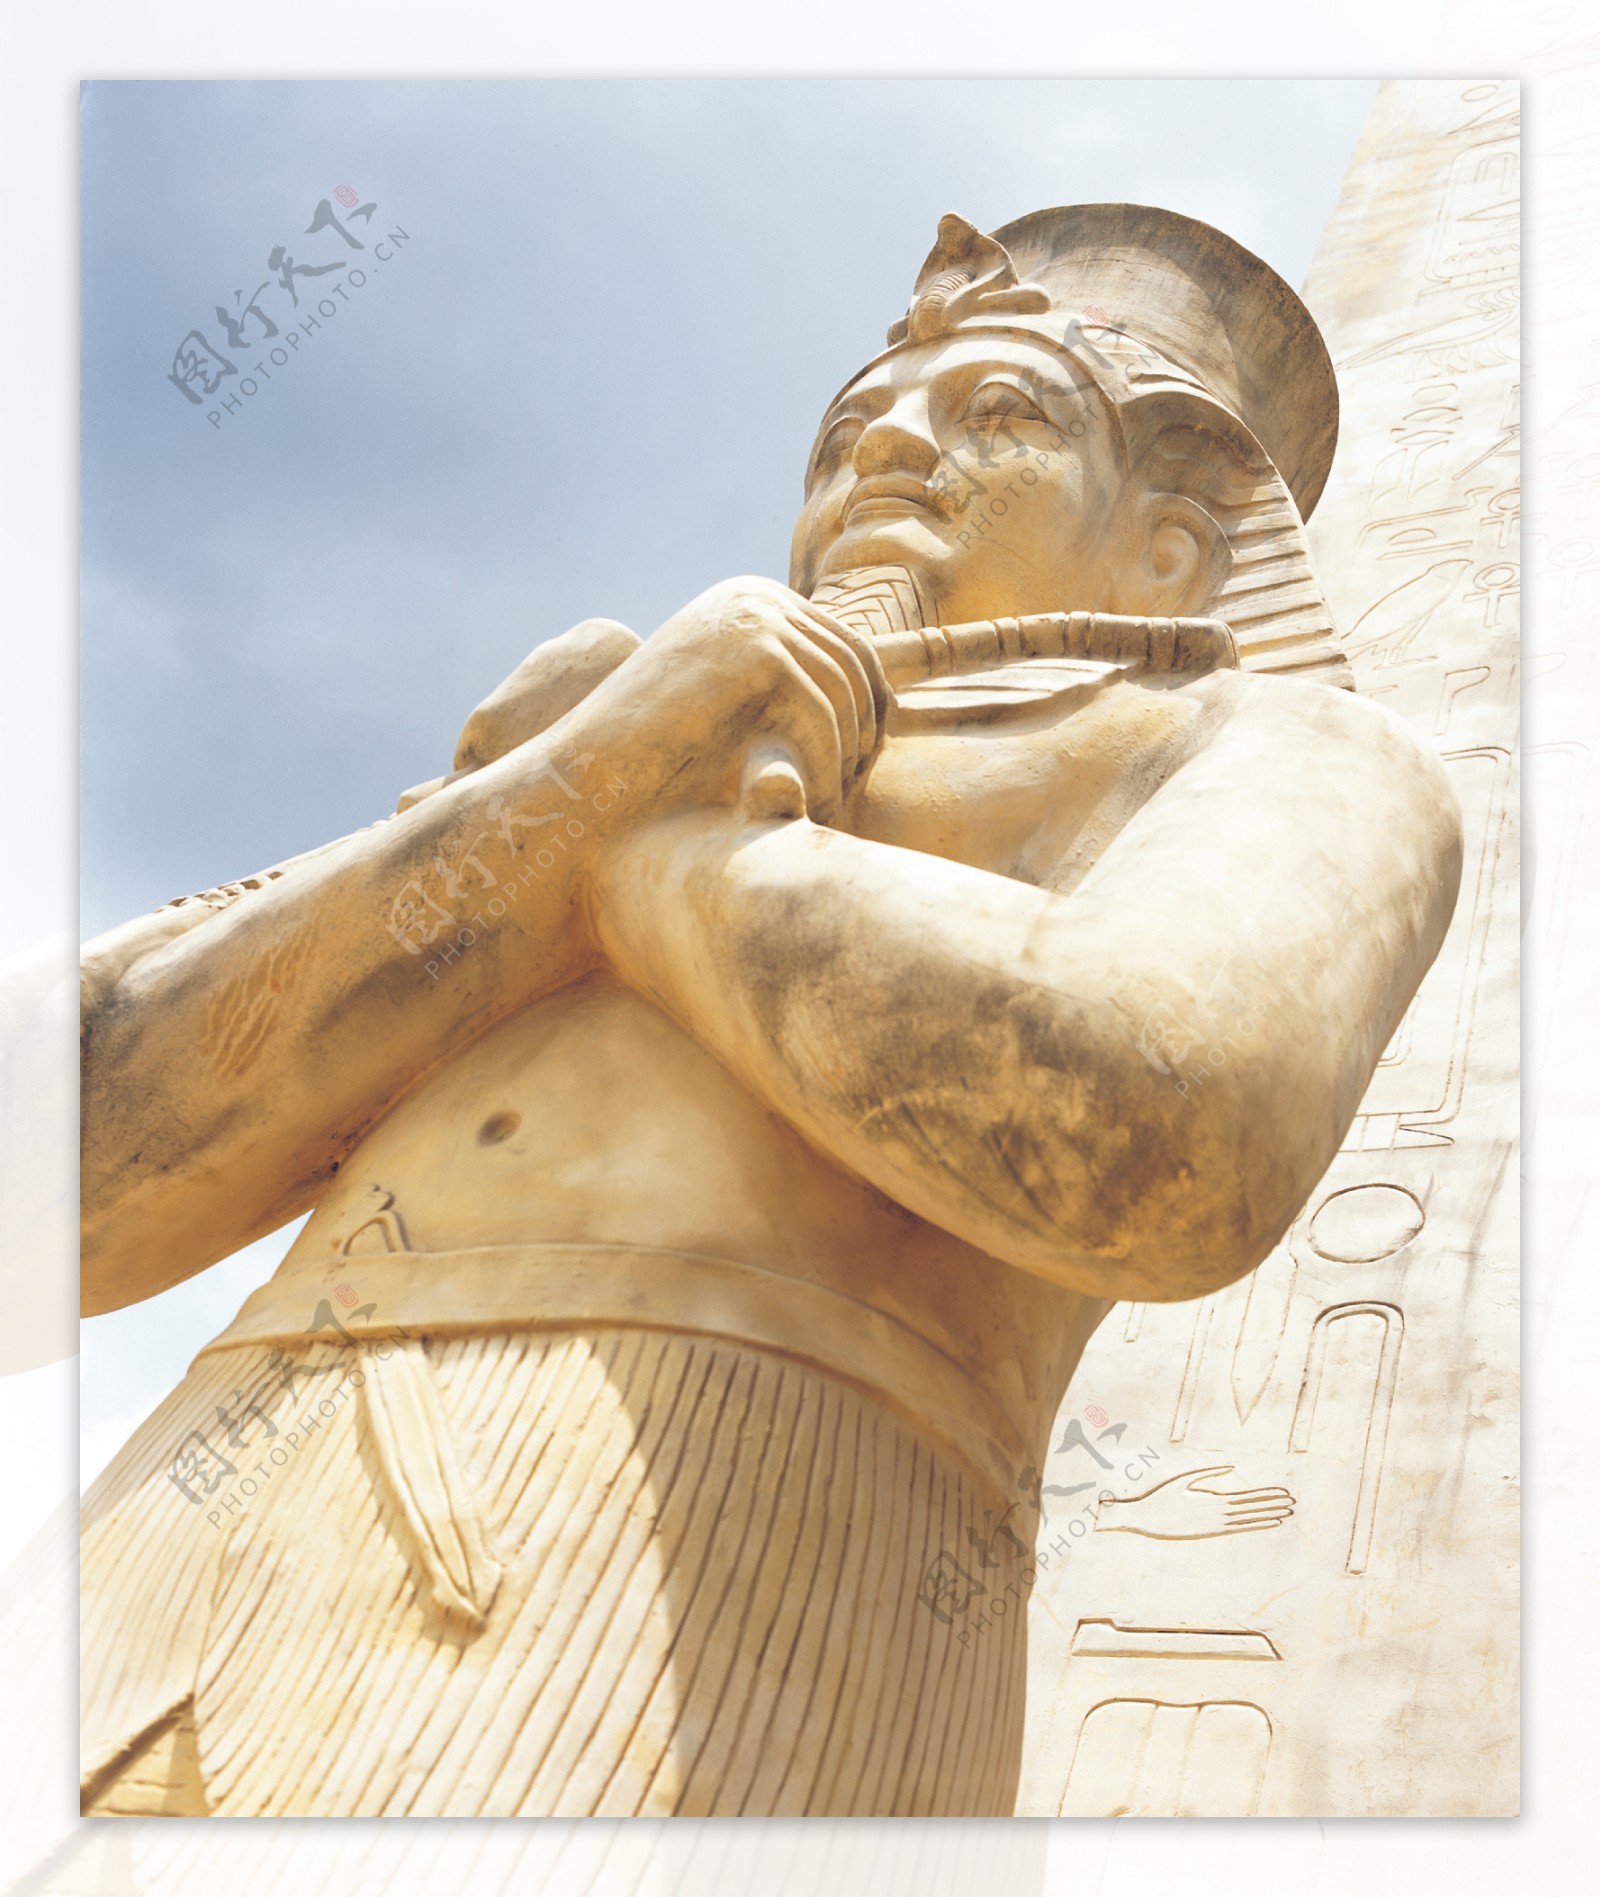 埃及人物塑像图片